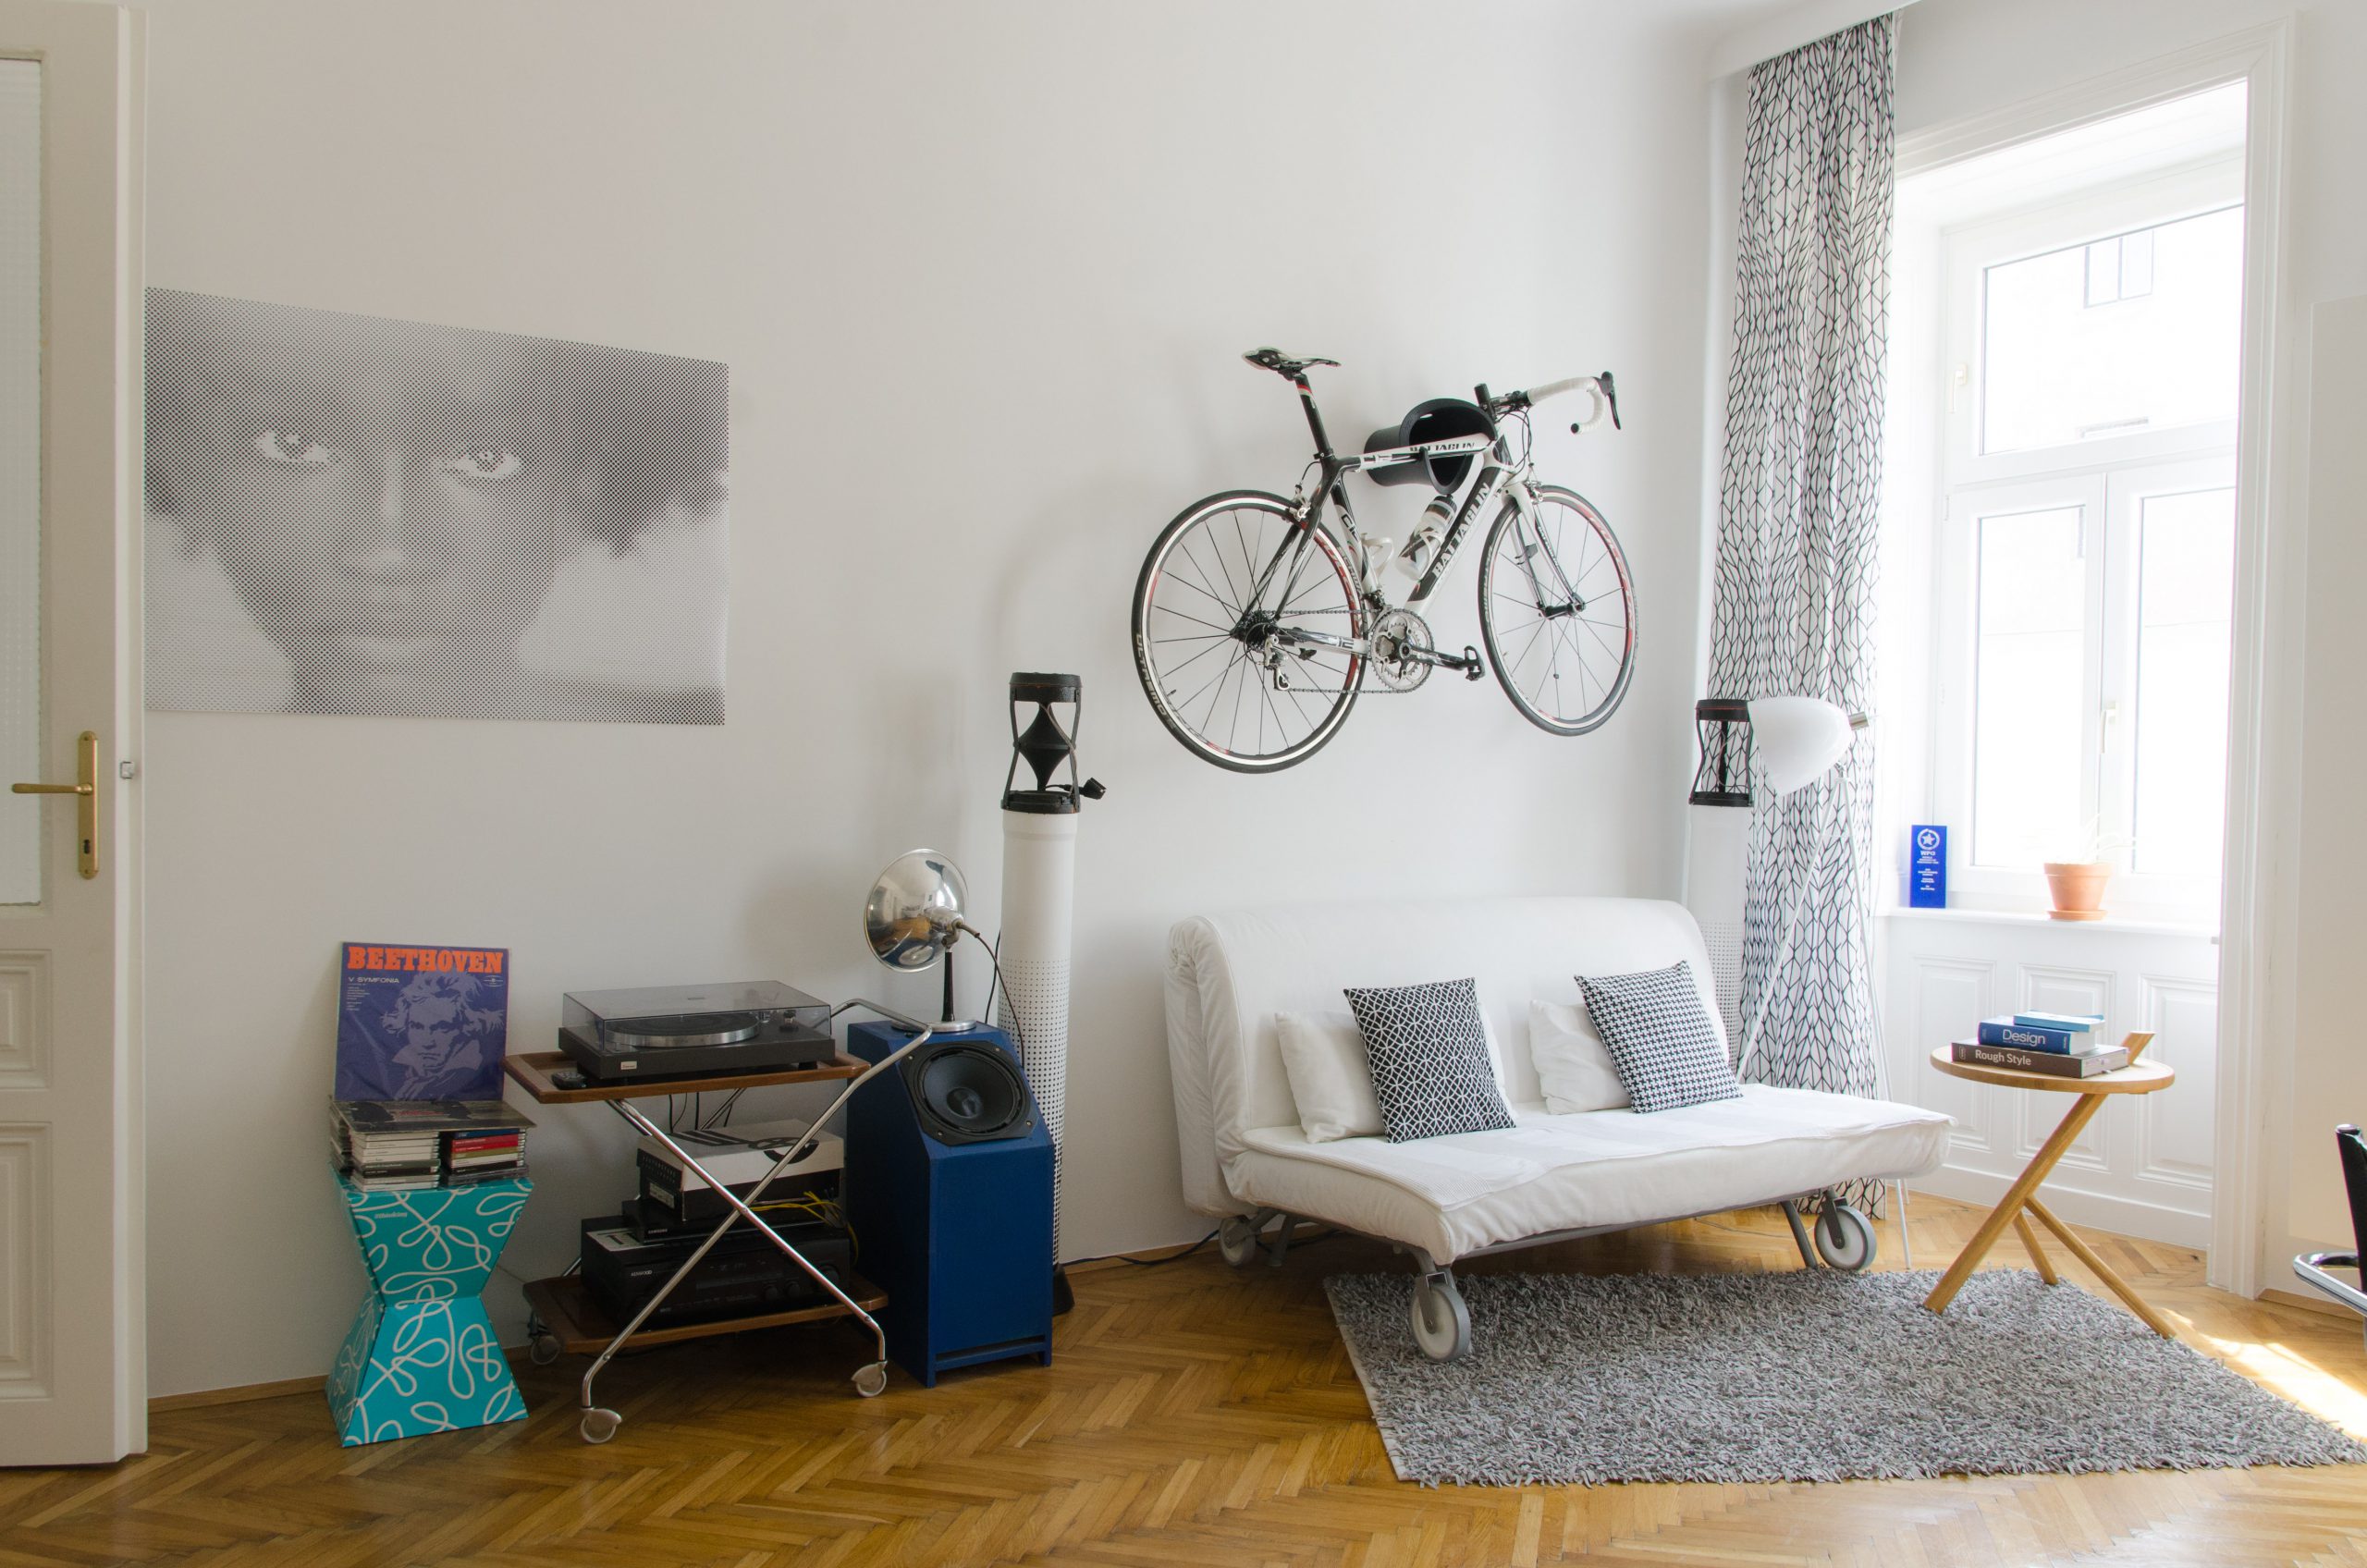 Wohnzimmer mit Fahrrad an der Wand